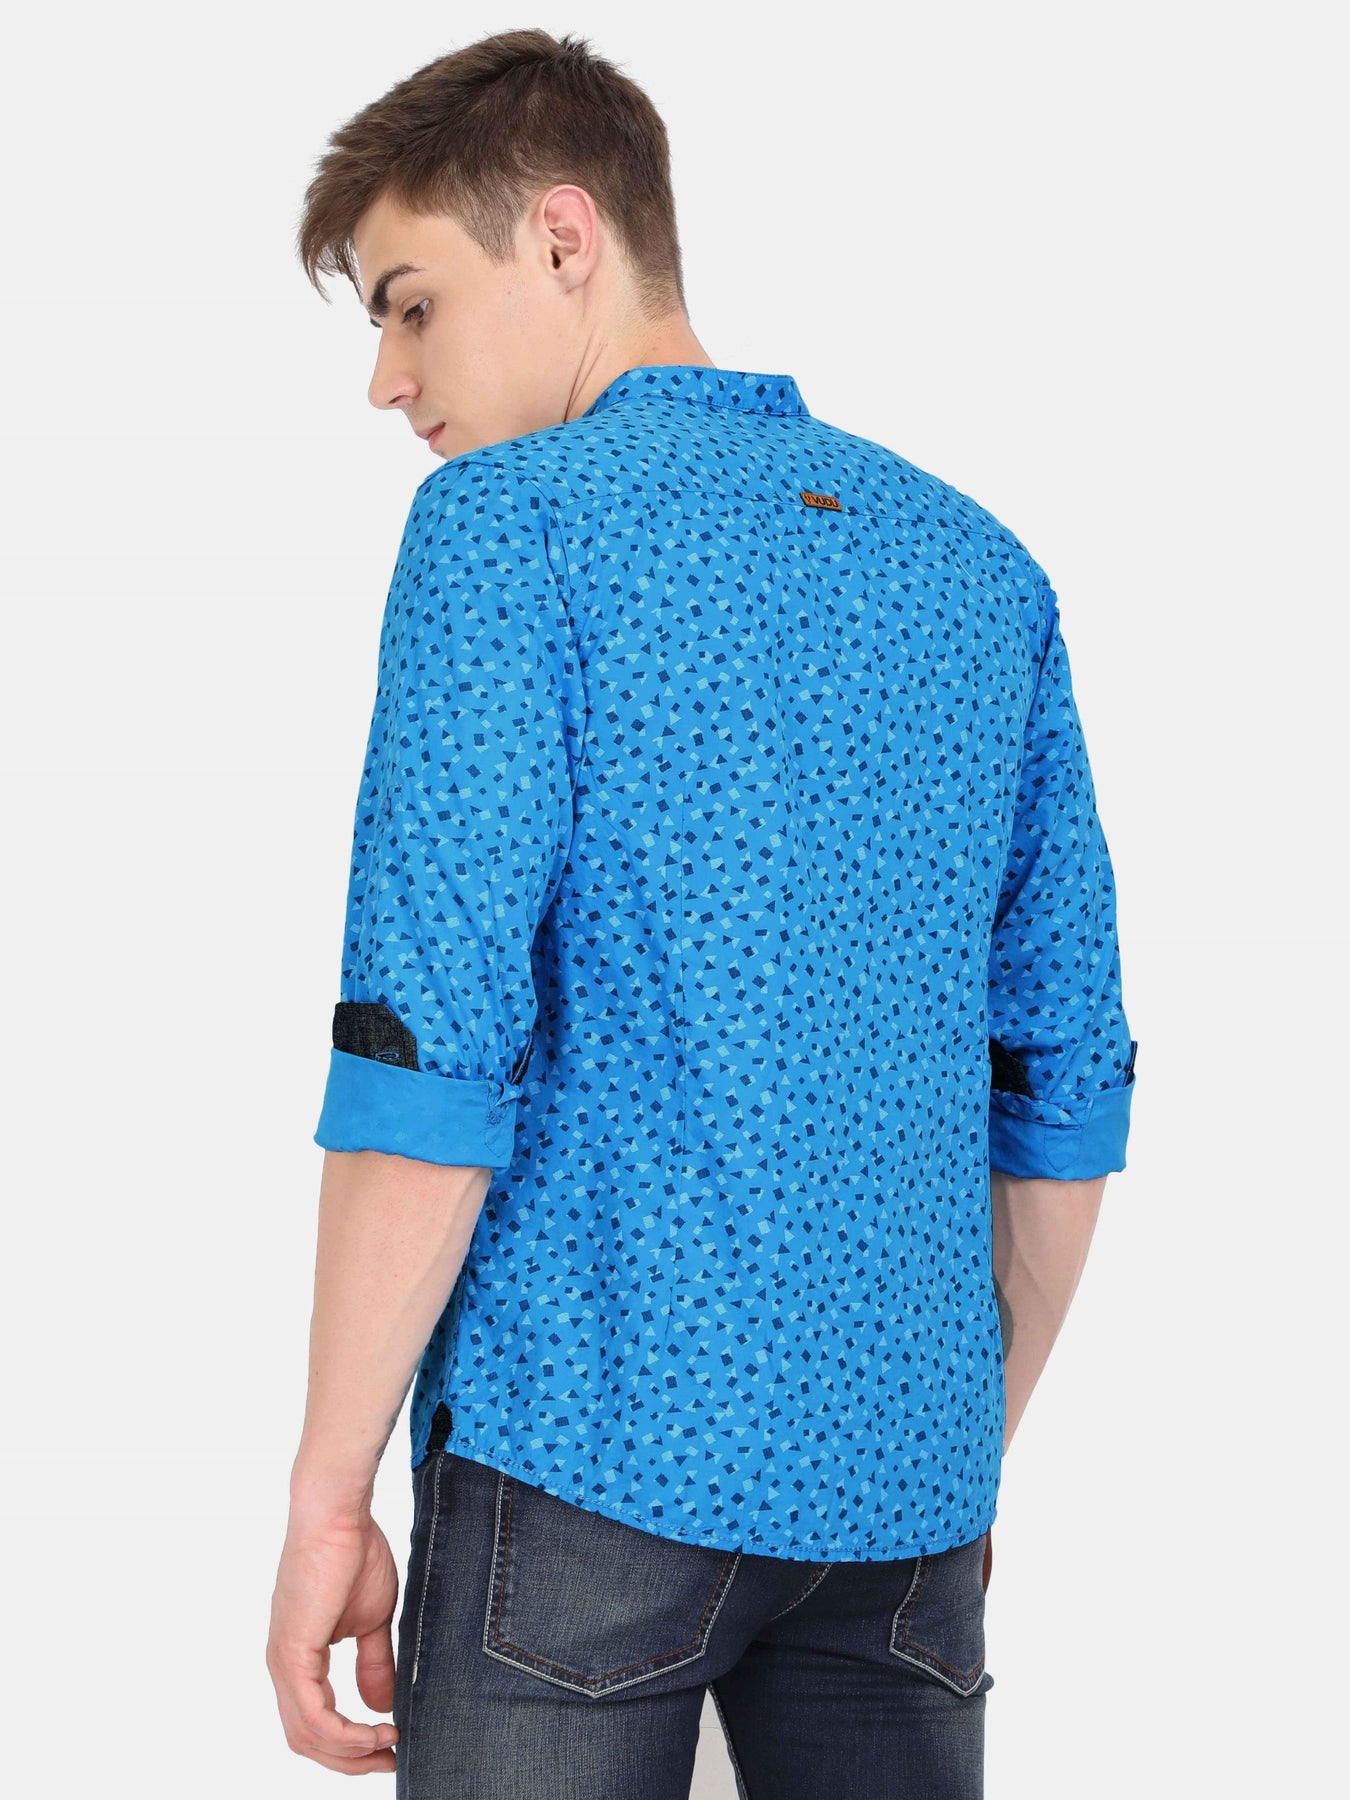 Buy Blue Abstract Print Shirt | Aqua Blue Shirt With Print – VUDU